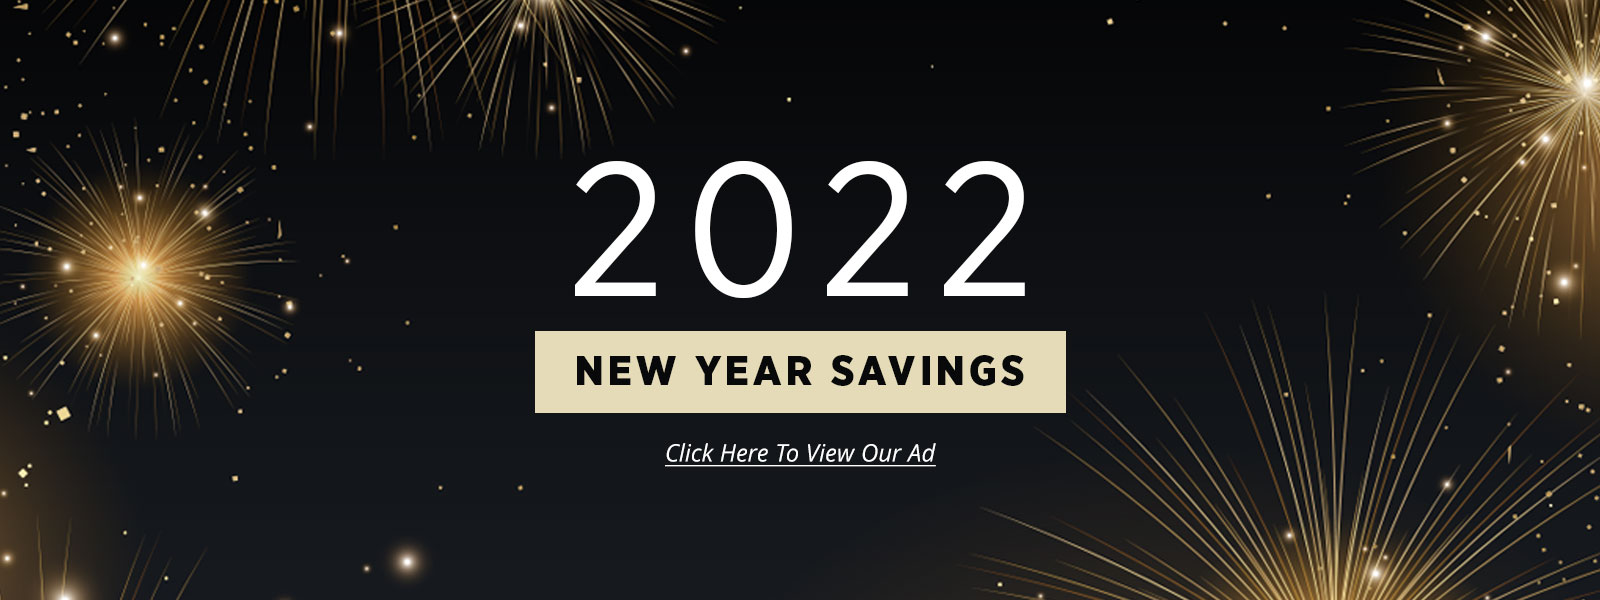 NewYear_Savings_Banners_12-29-21_1